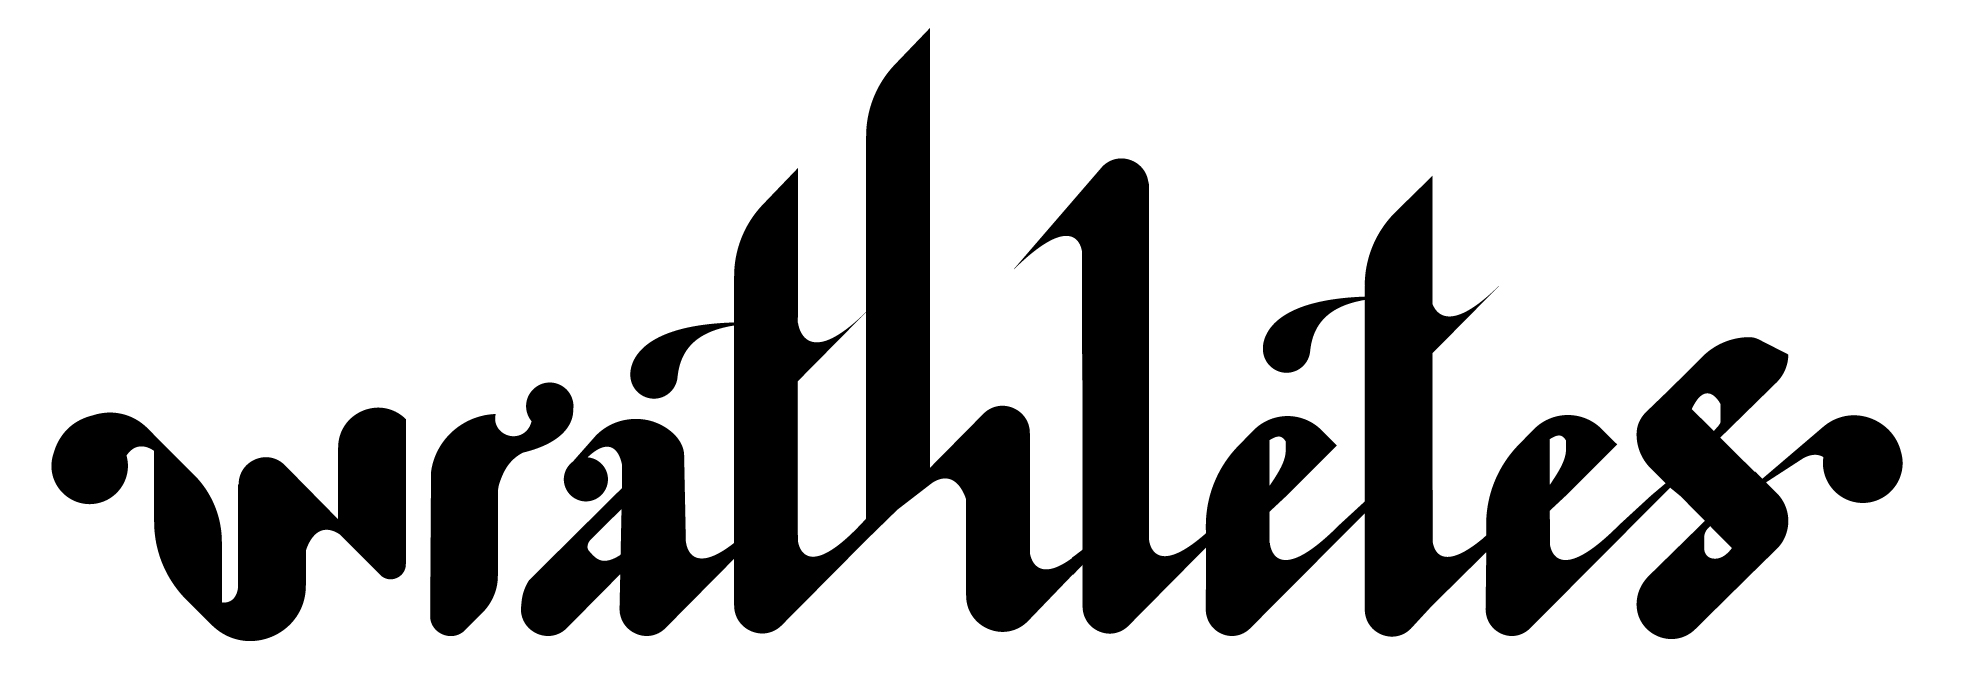 Wrathletes Logo